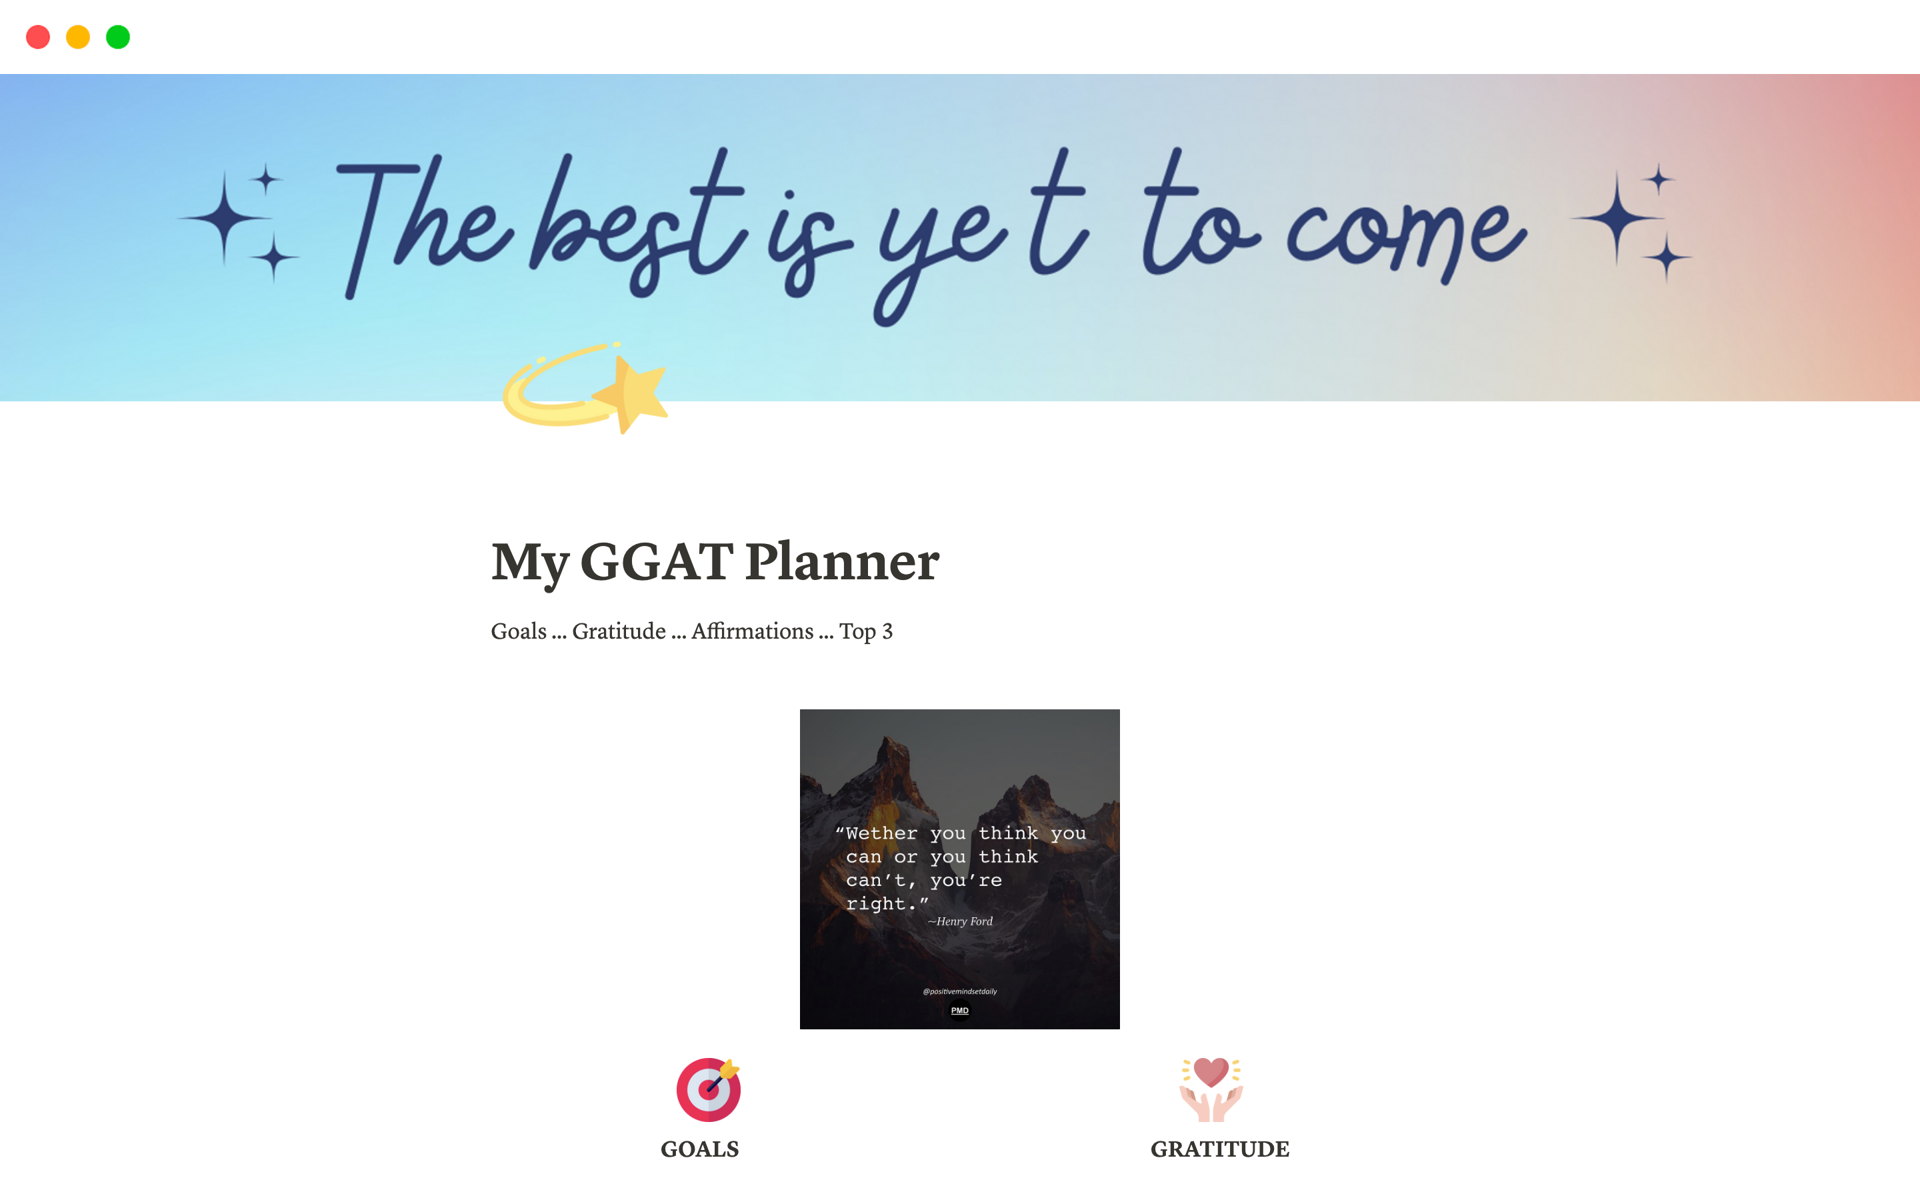 Vista previa de una plantilla para My GGAT Planner